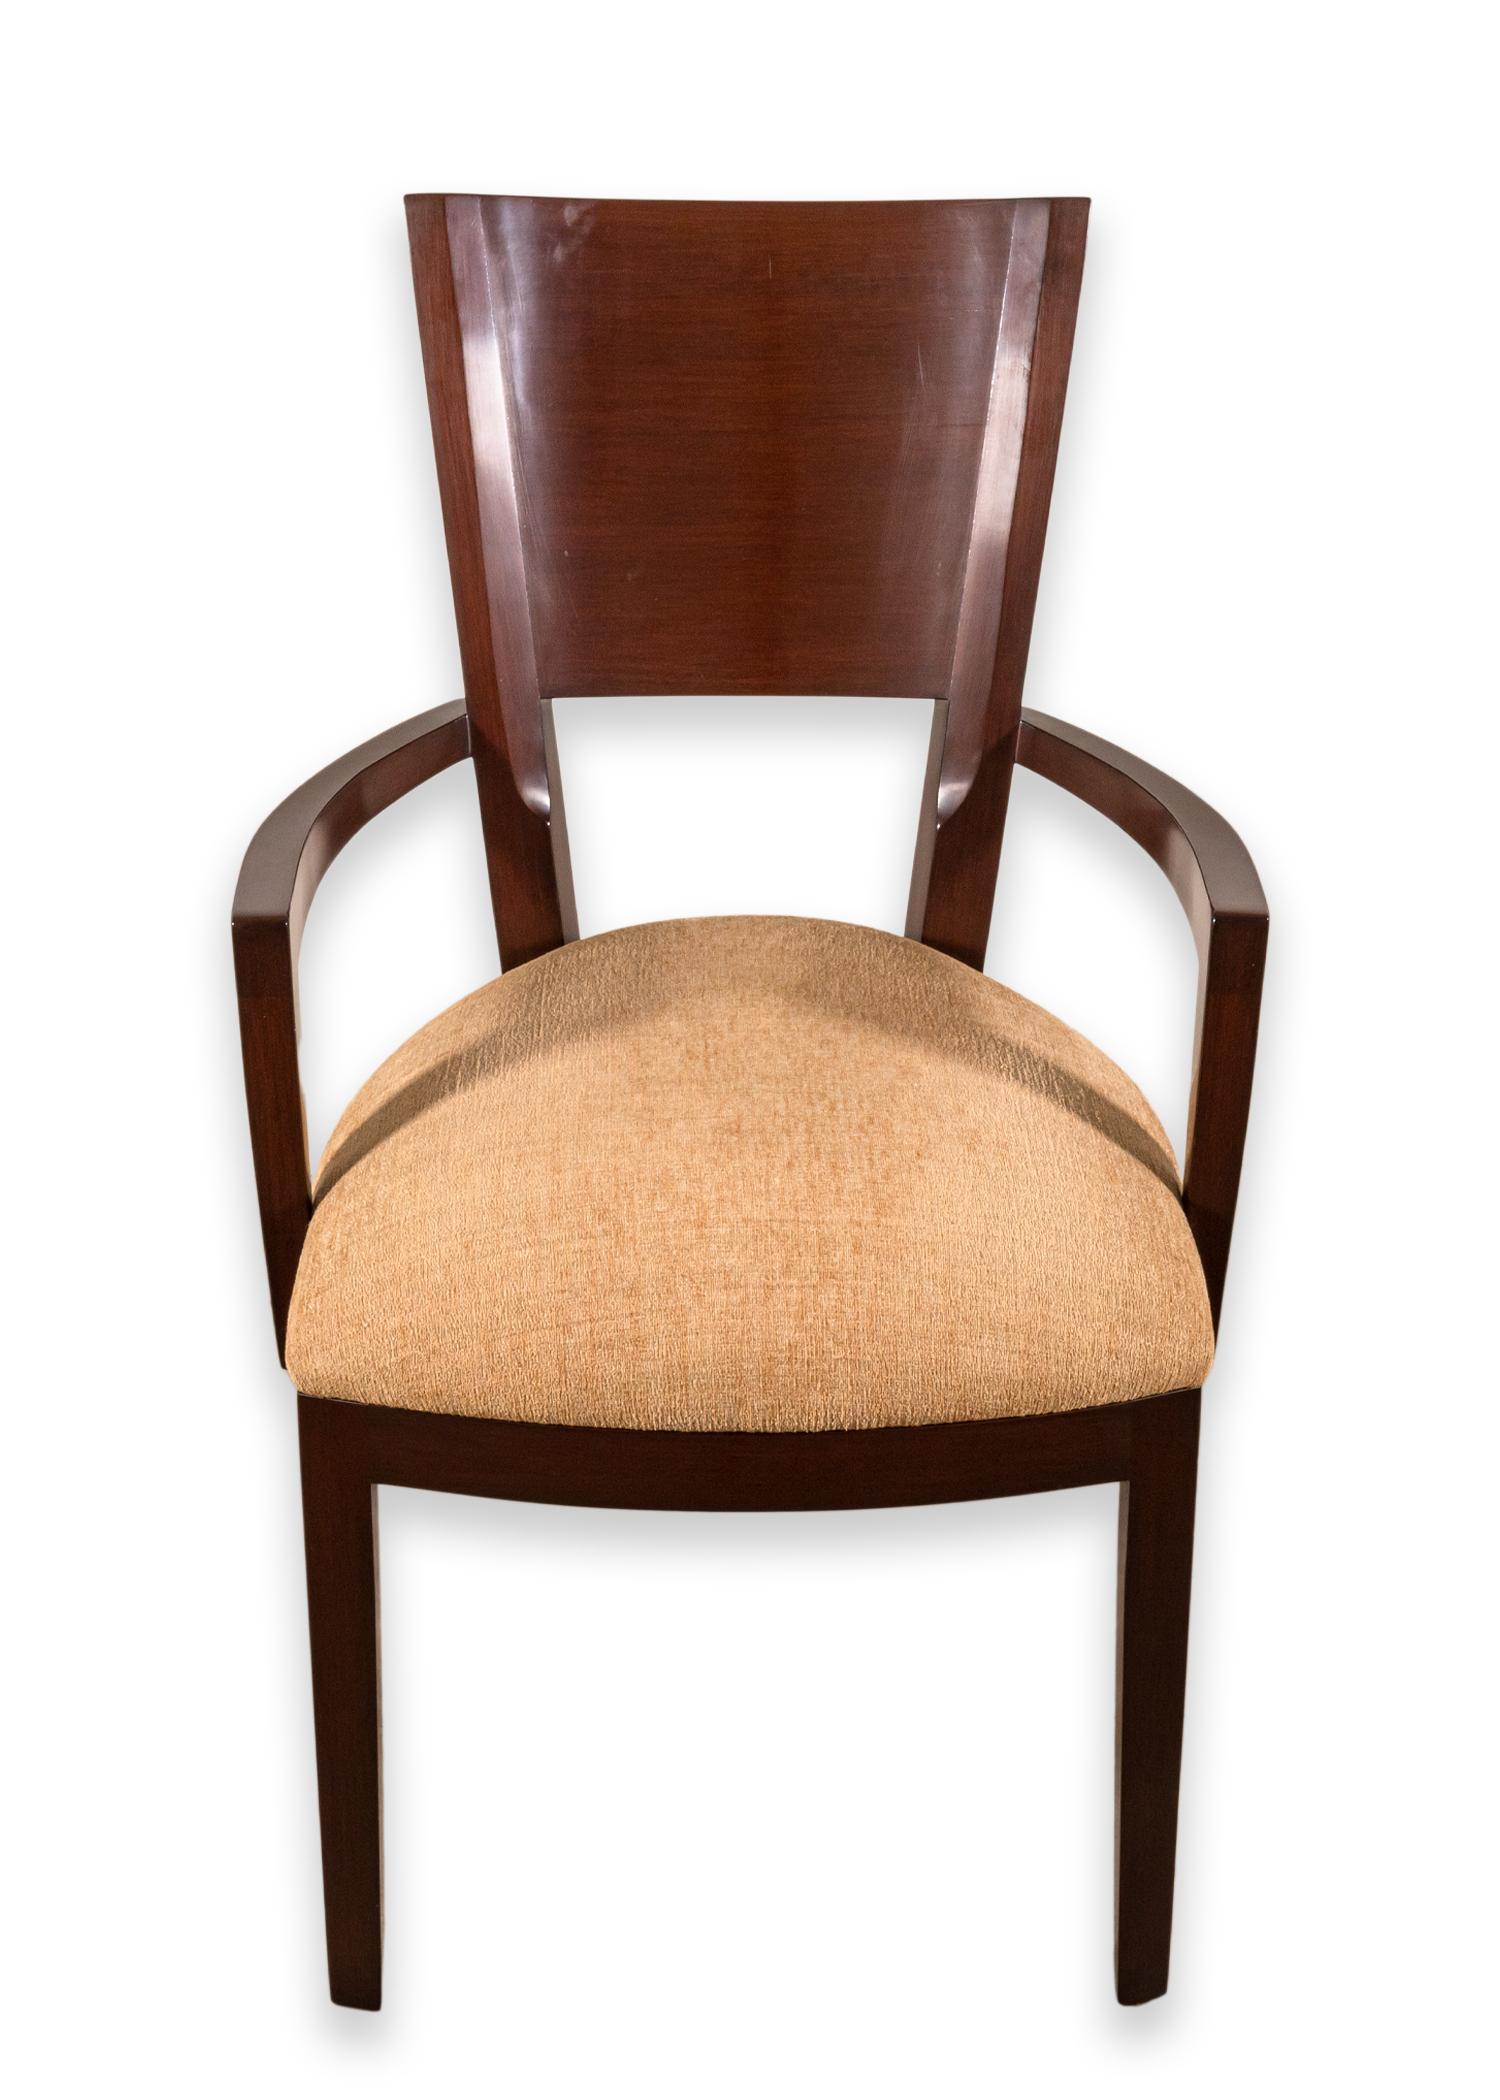 Une paire de chaises de salle à manger Berman Rossetti. Ces magnifiques fauteuils sont dotés d'un cadre en bois plein avec une finition sombre avec de belles veines de bois, et une finition subtile semi-brillante. Les sièges sont constitués d'une